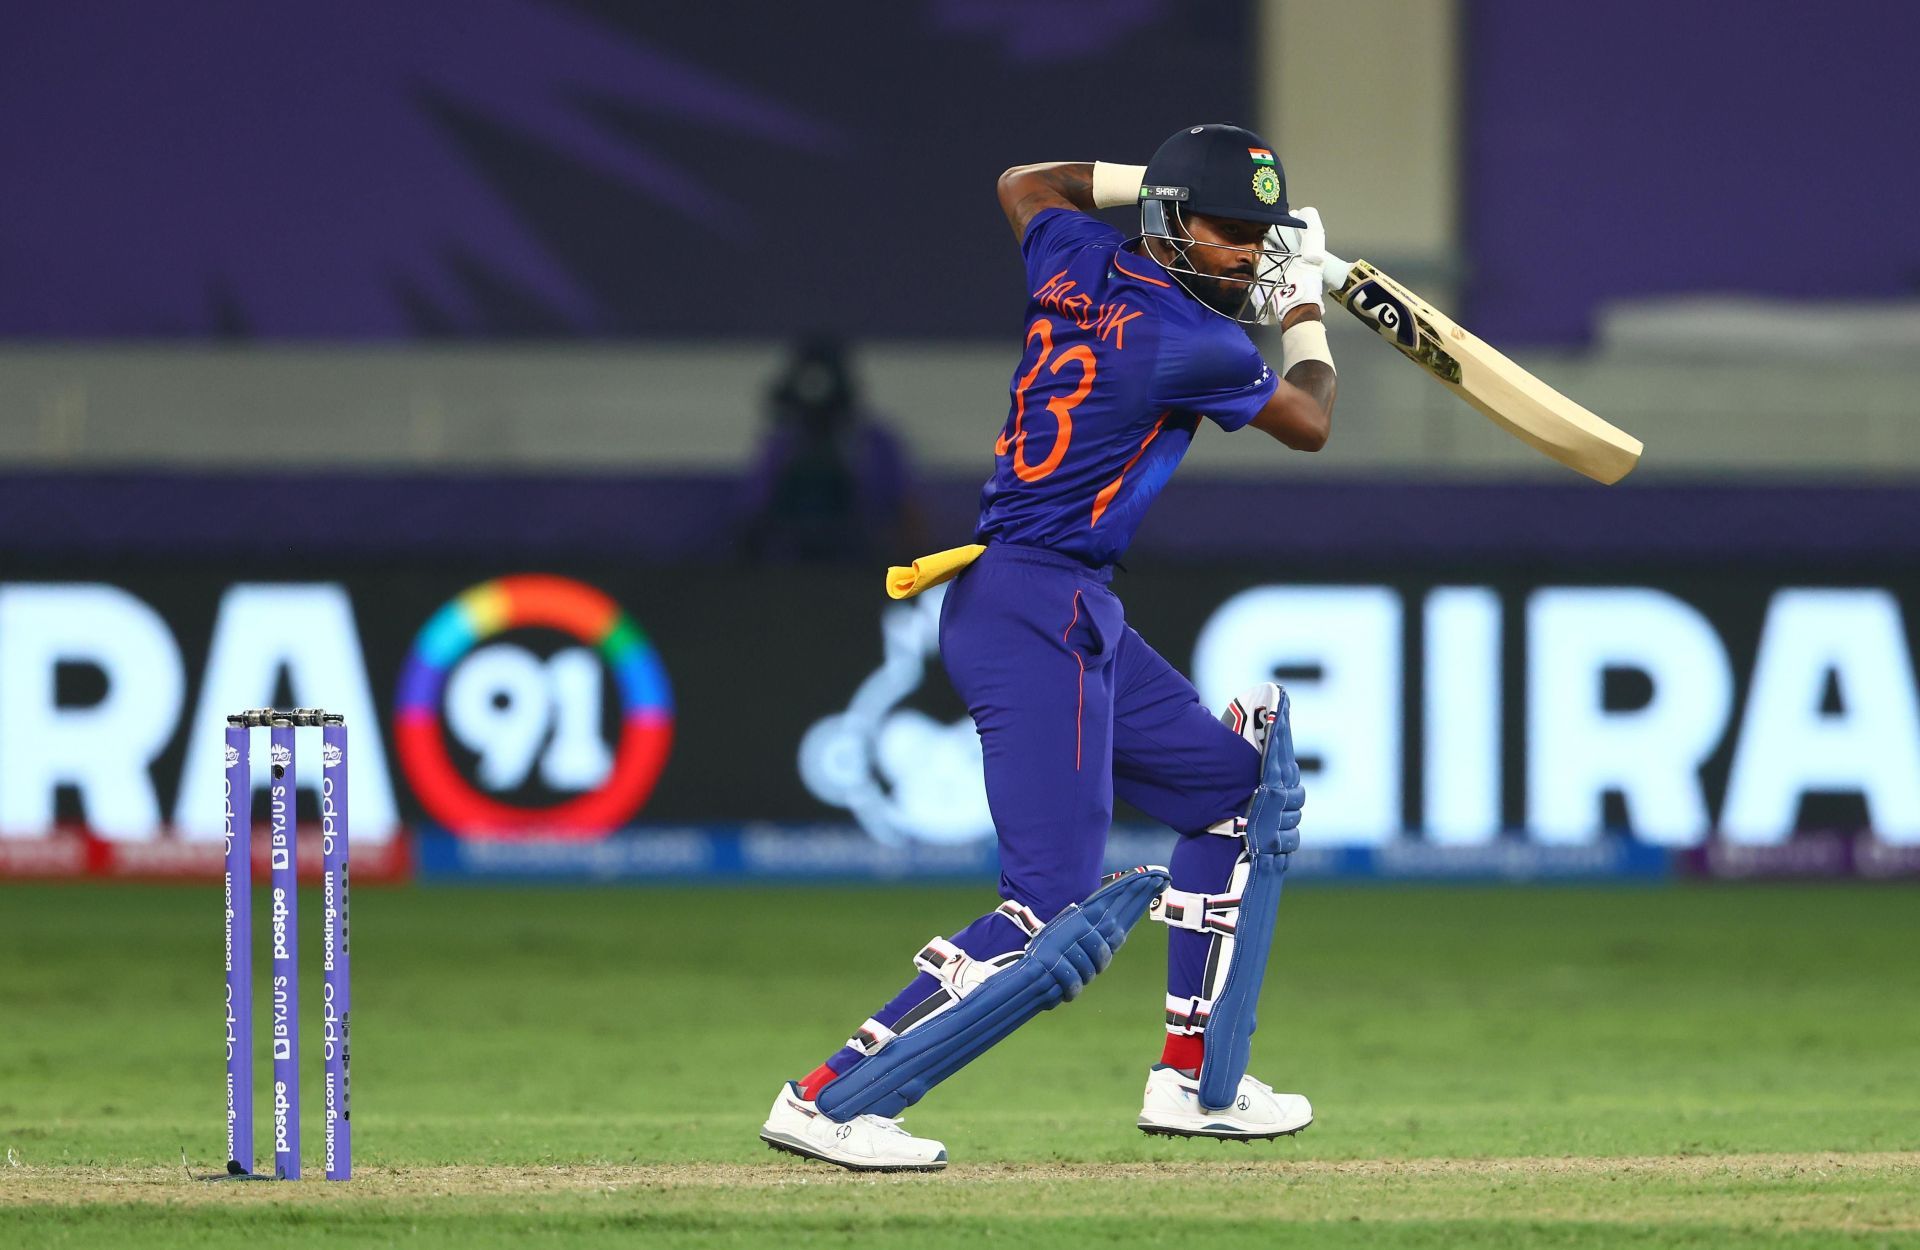 Hardik Pandya in action (Image Courtesy: ICC Cricket)